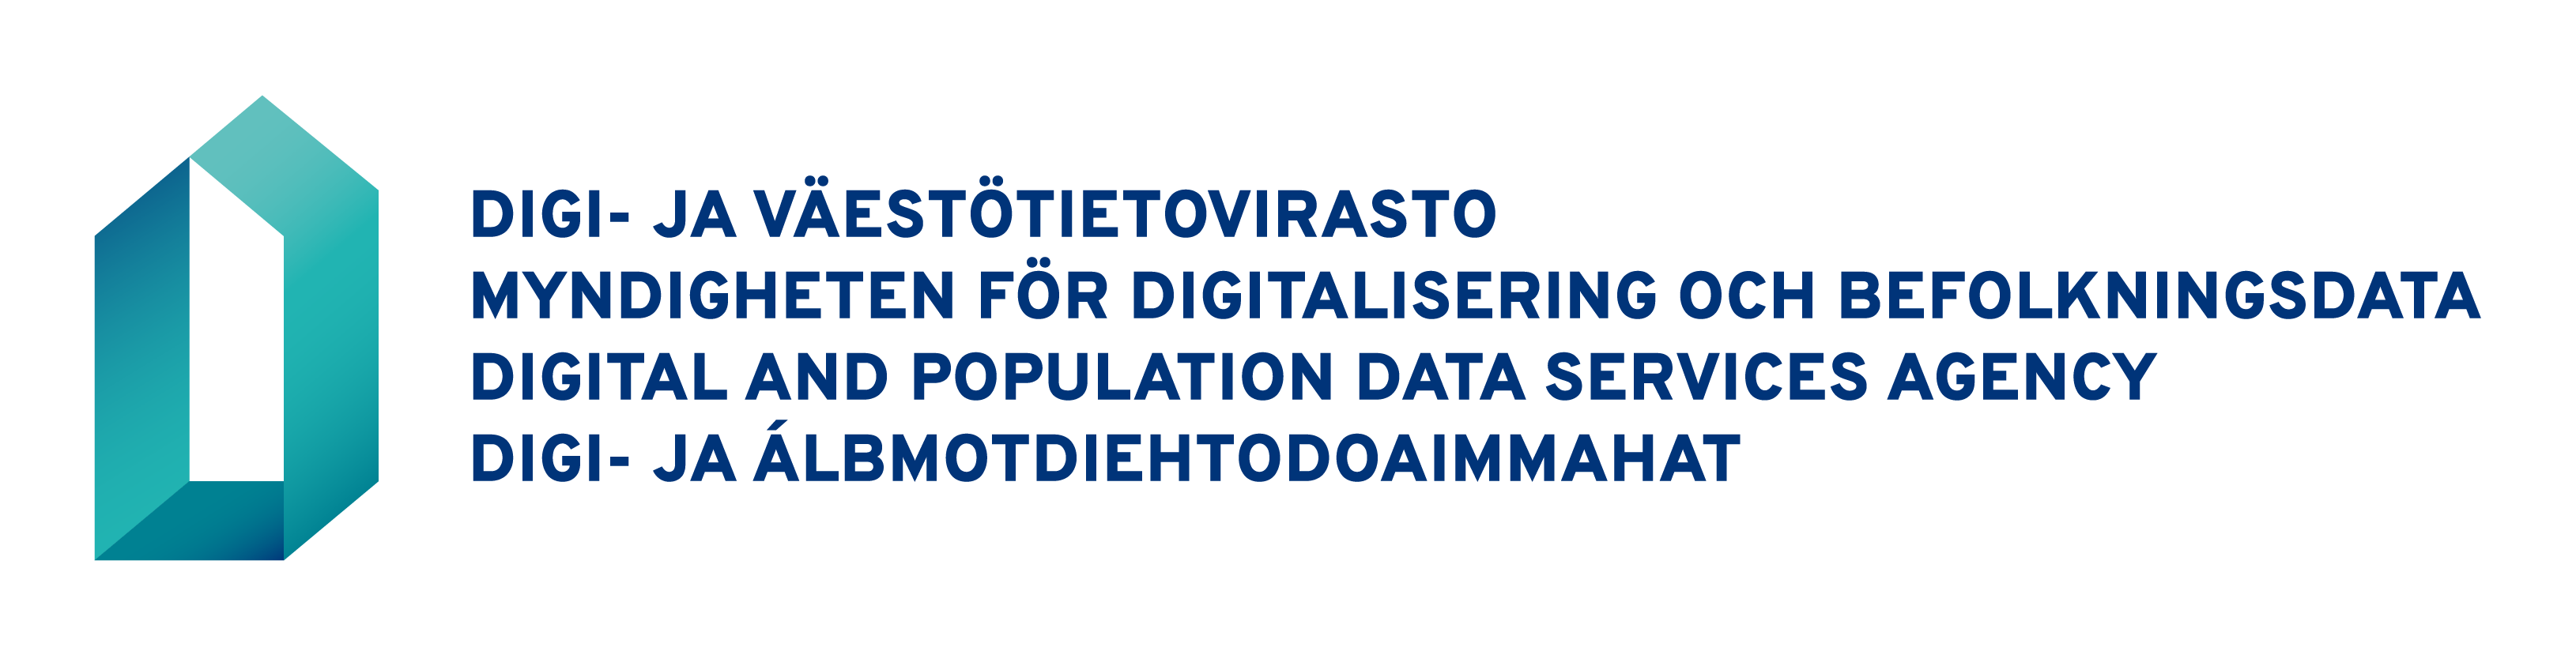 Logotyp: Myndigheten för digitalisering och befolkningsdata. Logotyp på fyra språk: finska-svenska-engelska-same